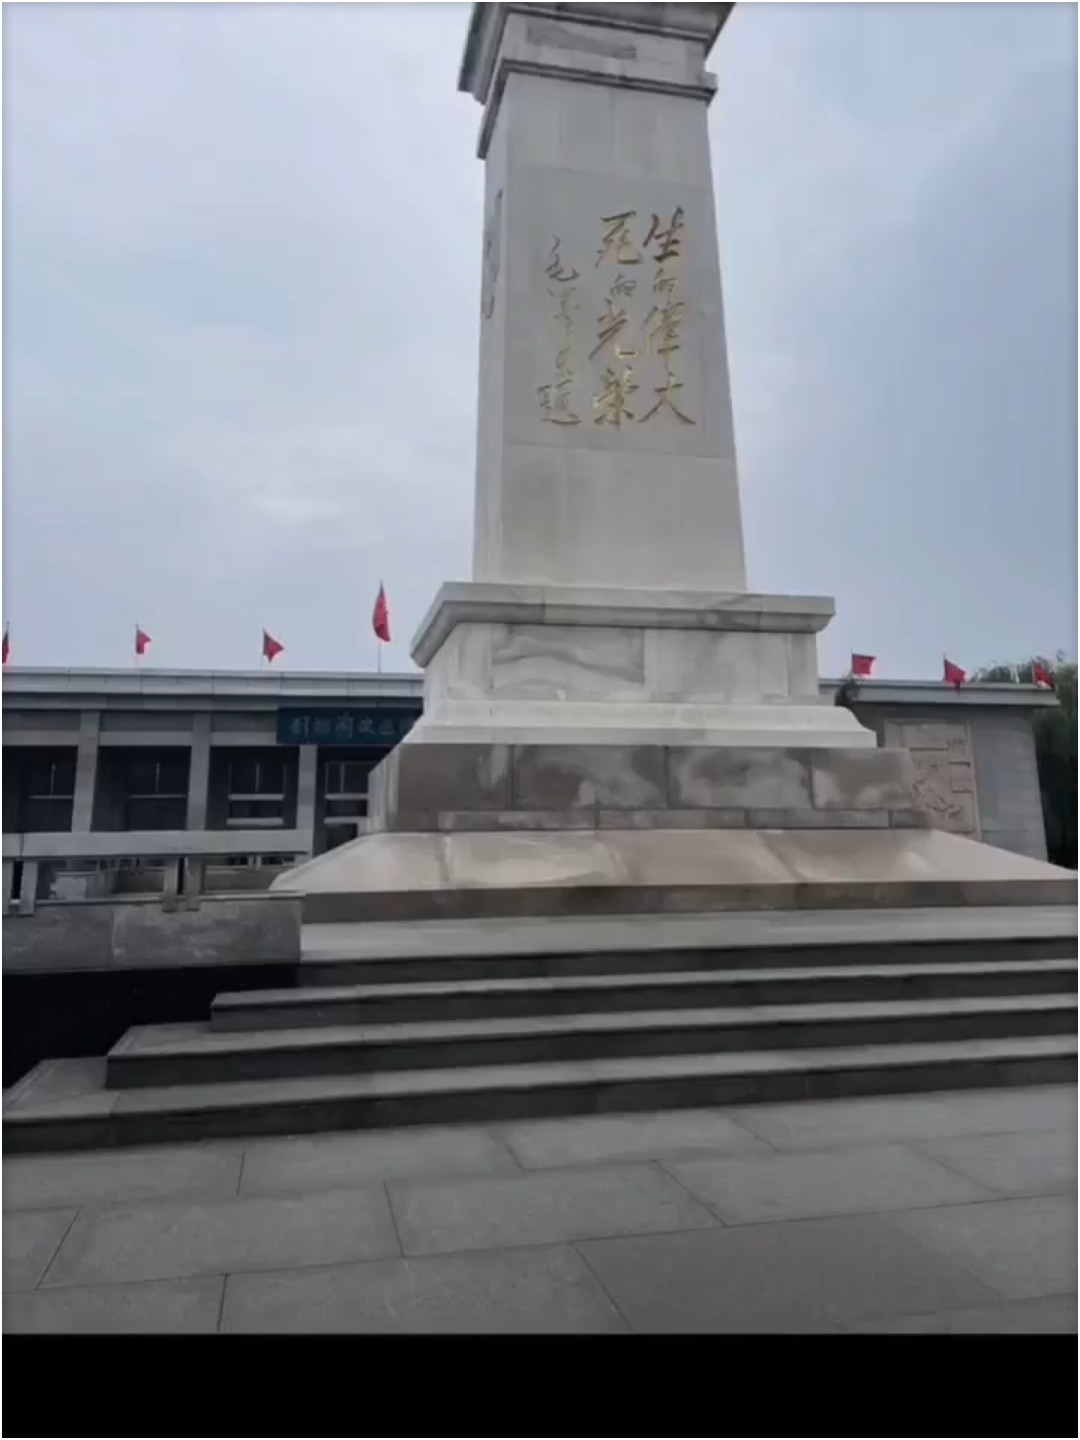 1.刘胡兰纪念馆 坐落在山西省文水县刘胡兰村南。1947年1月12日，国民党山西军阀阎锡山所部发动袭